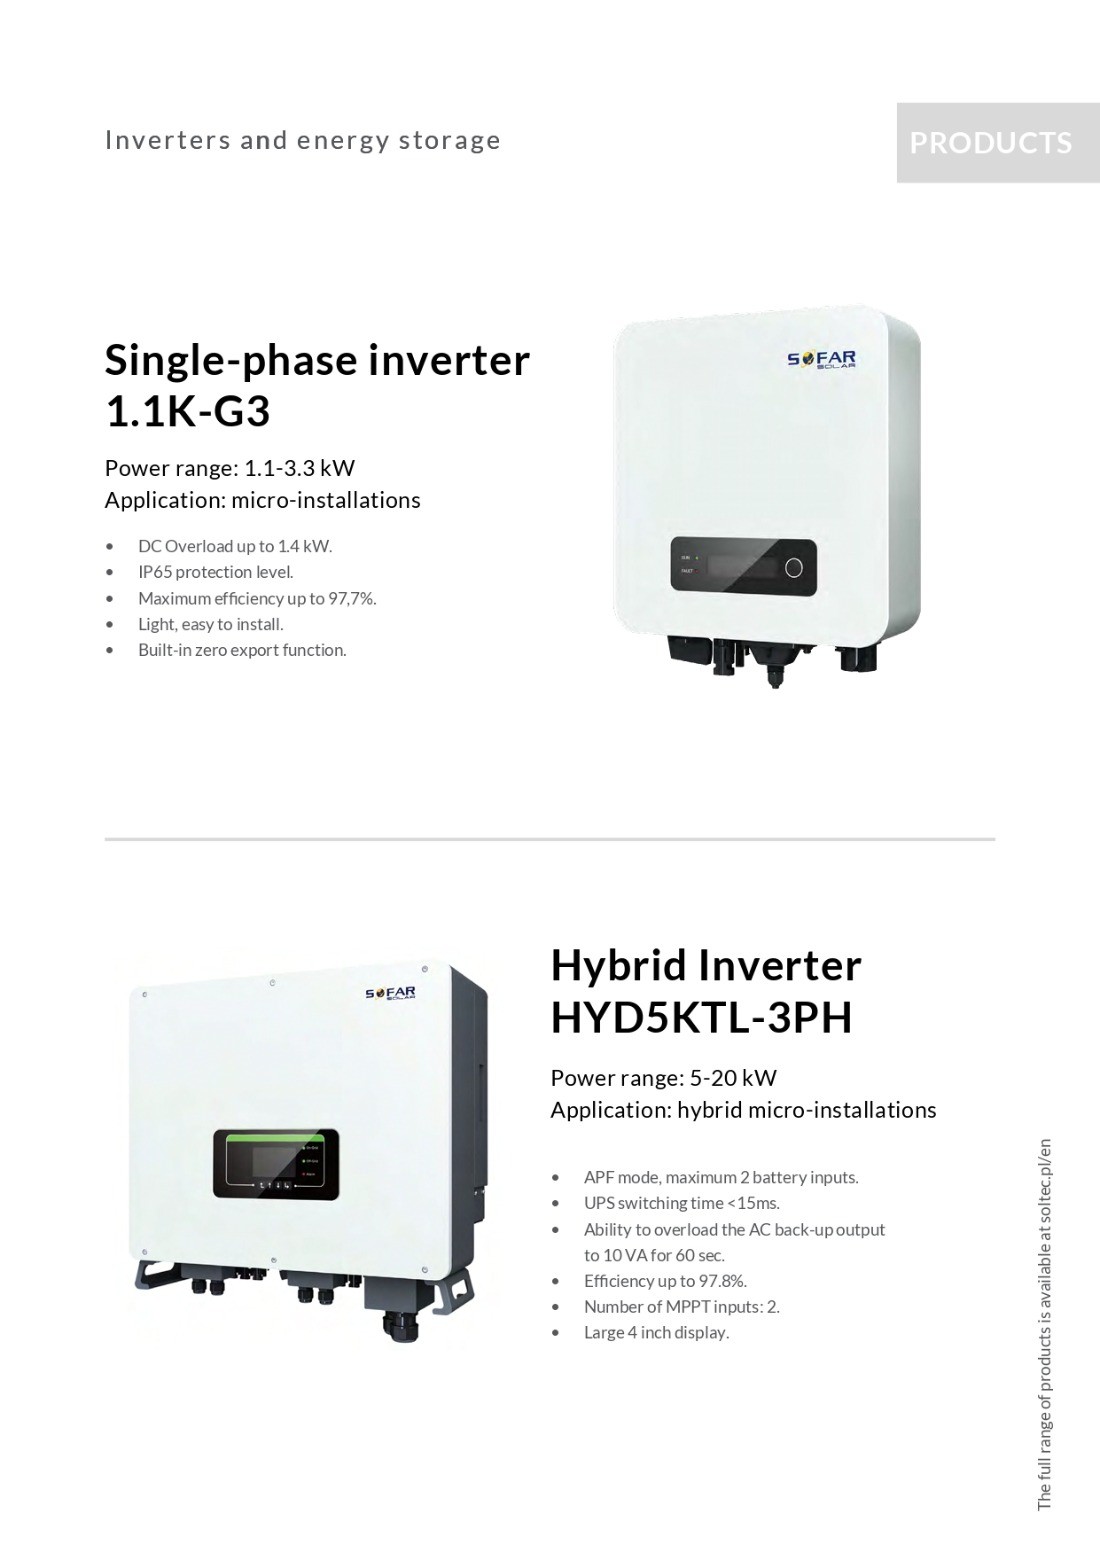 Onduleur hybride 20kw - réseau - triphasé - HYD 20KTL - SOFAR